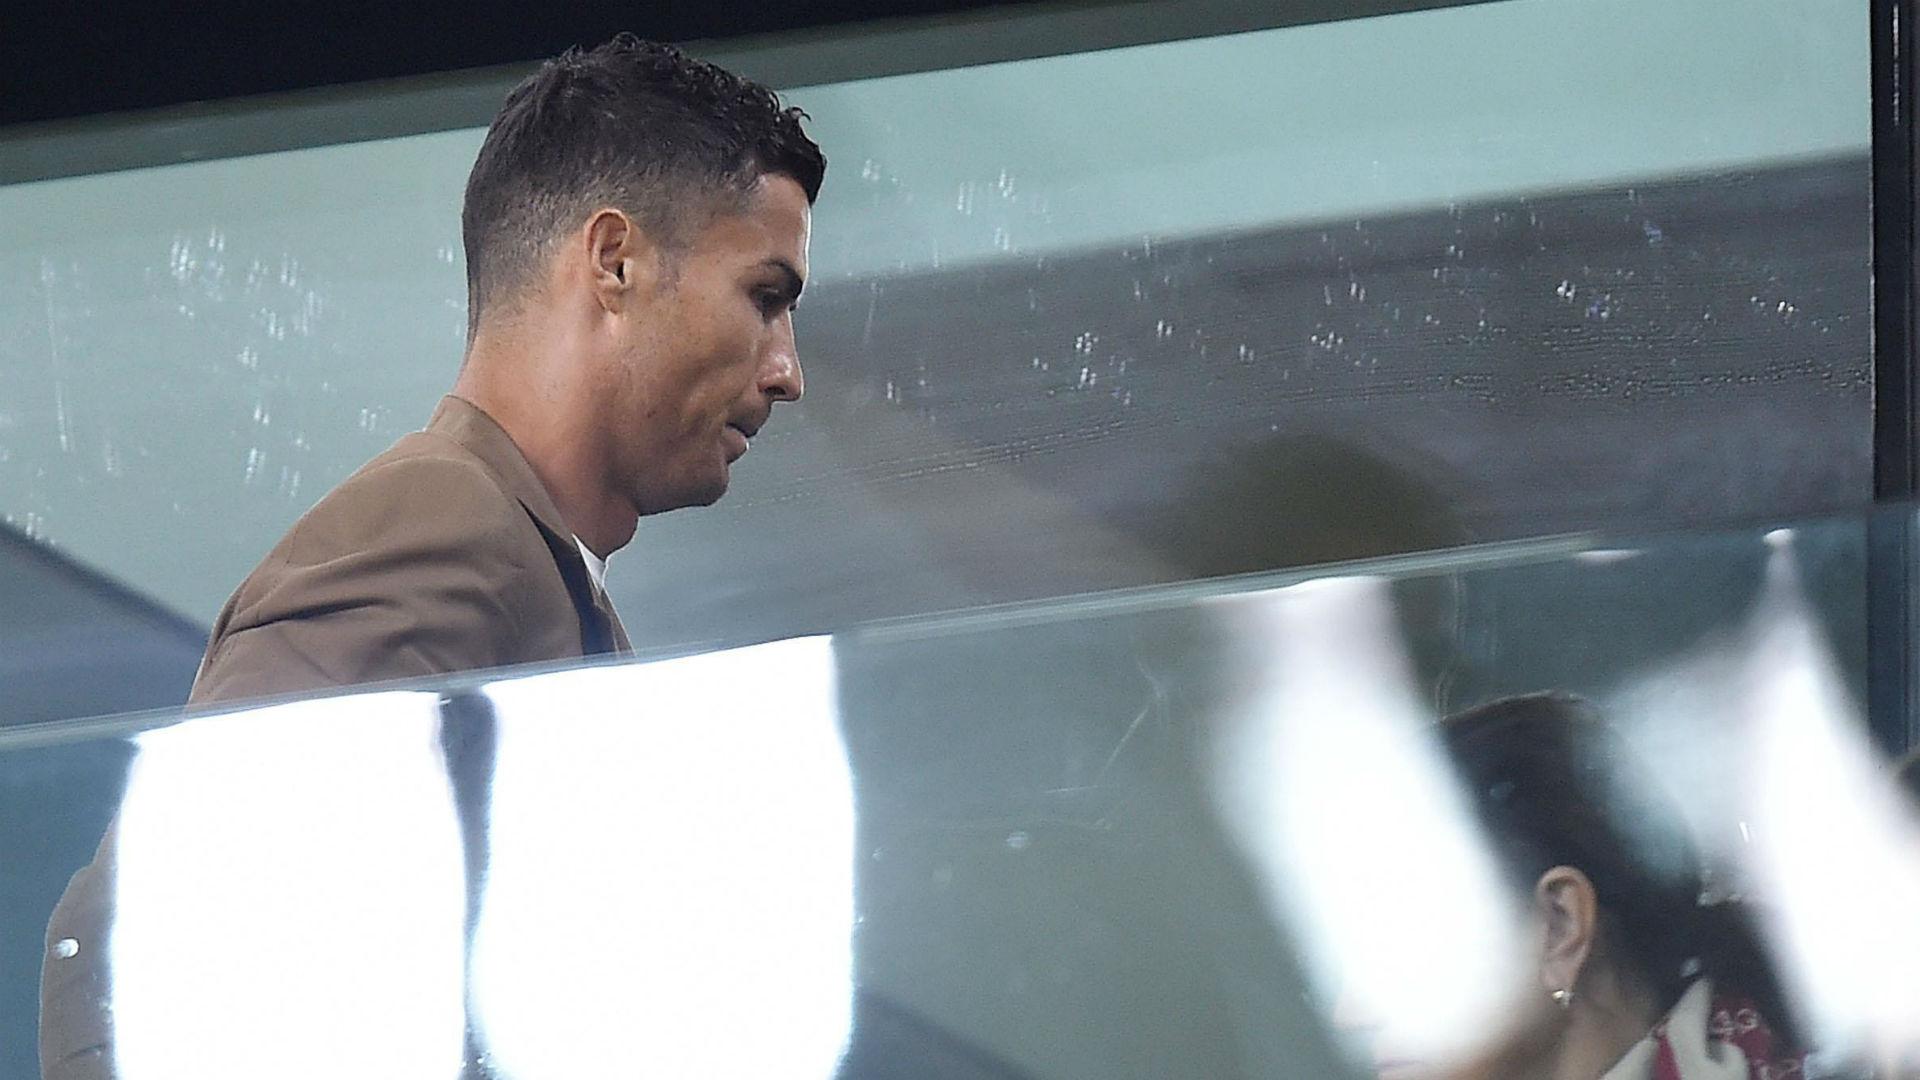 Cristiano Ronaldo odrzucił oskarżenia o gwałt. "To ohydna zbrodnia" 